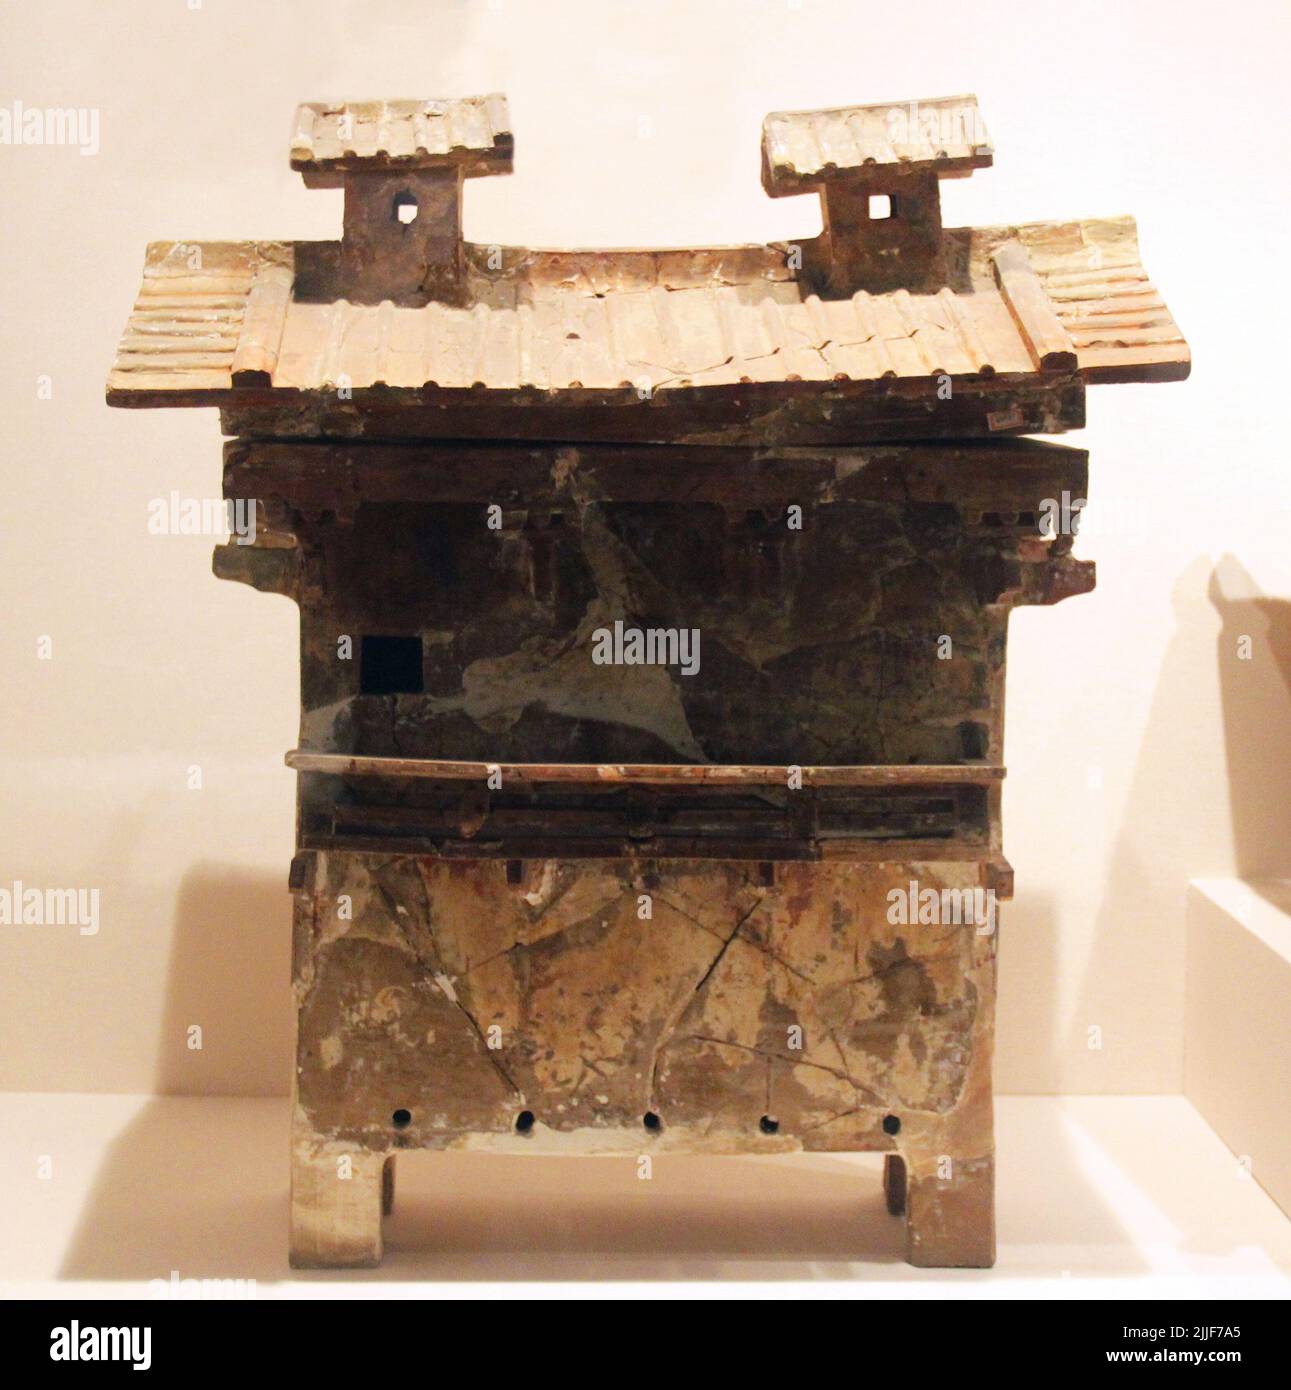 Cina: Modello in ceramica di un granaio, dinastia Han orientale (25-220 CE), Museo Provinciale di Shandong, Jinan. La dinastia Han era una dinastia imperiale che governò durante un'epoca d'oro nella storia cinese e da allora ha influenzato l'identità della civiltà cinese. Fondata per la prima volta dall'imperatore Gao (Liu Bang), fu brevemente usurpata dalla dinastia Xin (9-23 d.C.), così è separata in due periodi: L'Han occidentale (202 a.C. - 9 d.C.) e l'Han orientale (25-220 d.C.). La porcellana e la ceramica sono state realizzate in grande quantità durante gli anni della Dinastia Han, con sviluppi in nuove tecniche e forme d'arte leader Foto Stock